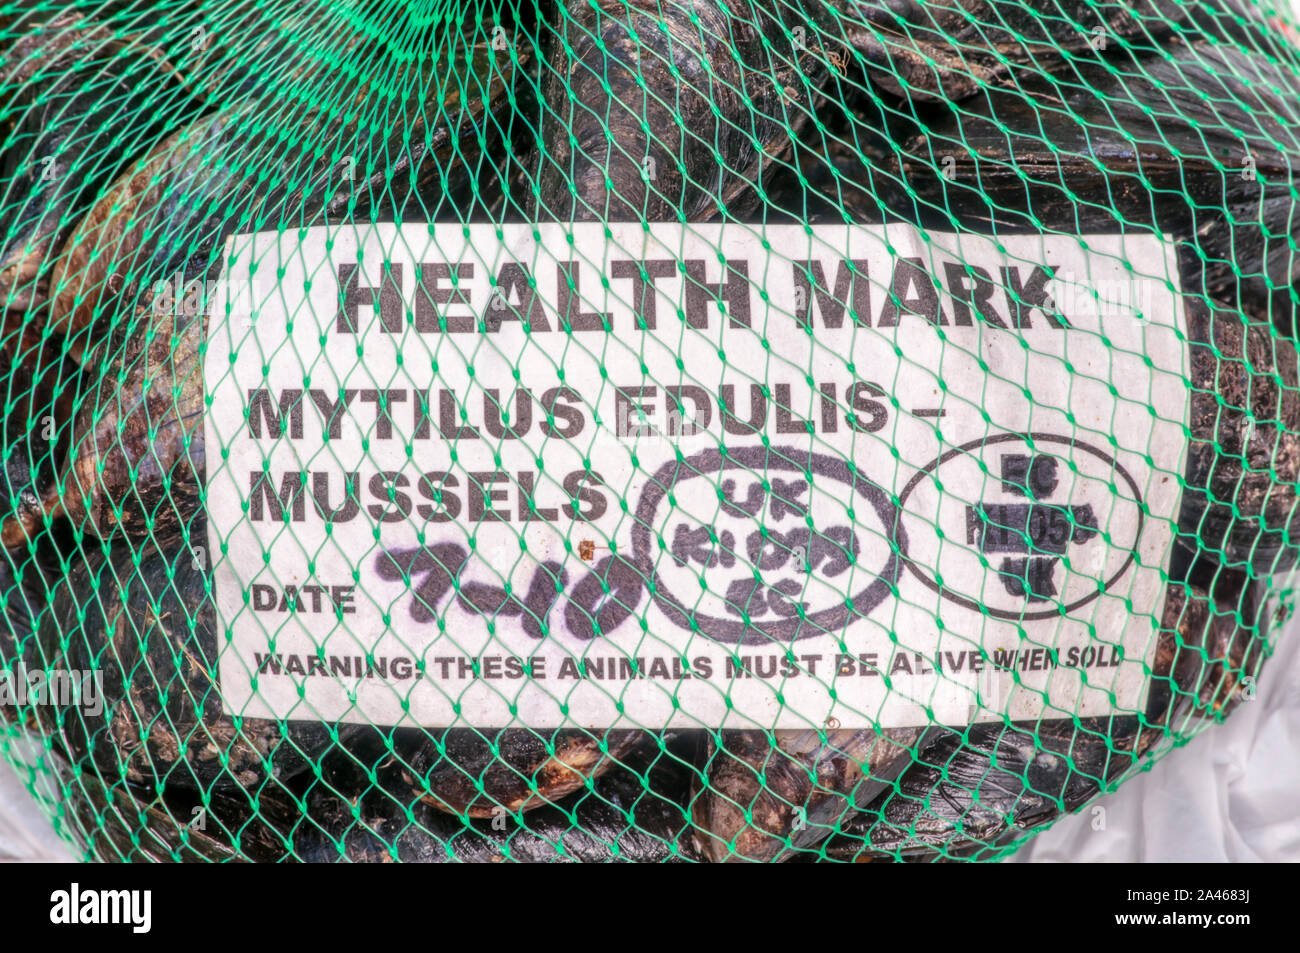 Zeichen auf eine Tasche von brancaster Muscheln mit ihren lateinischen Namen, Mytilus edulis und warnt Diese Tiere müssen lebendig sein, wenn sie verkauft. Stockfoto